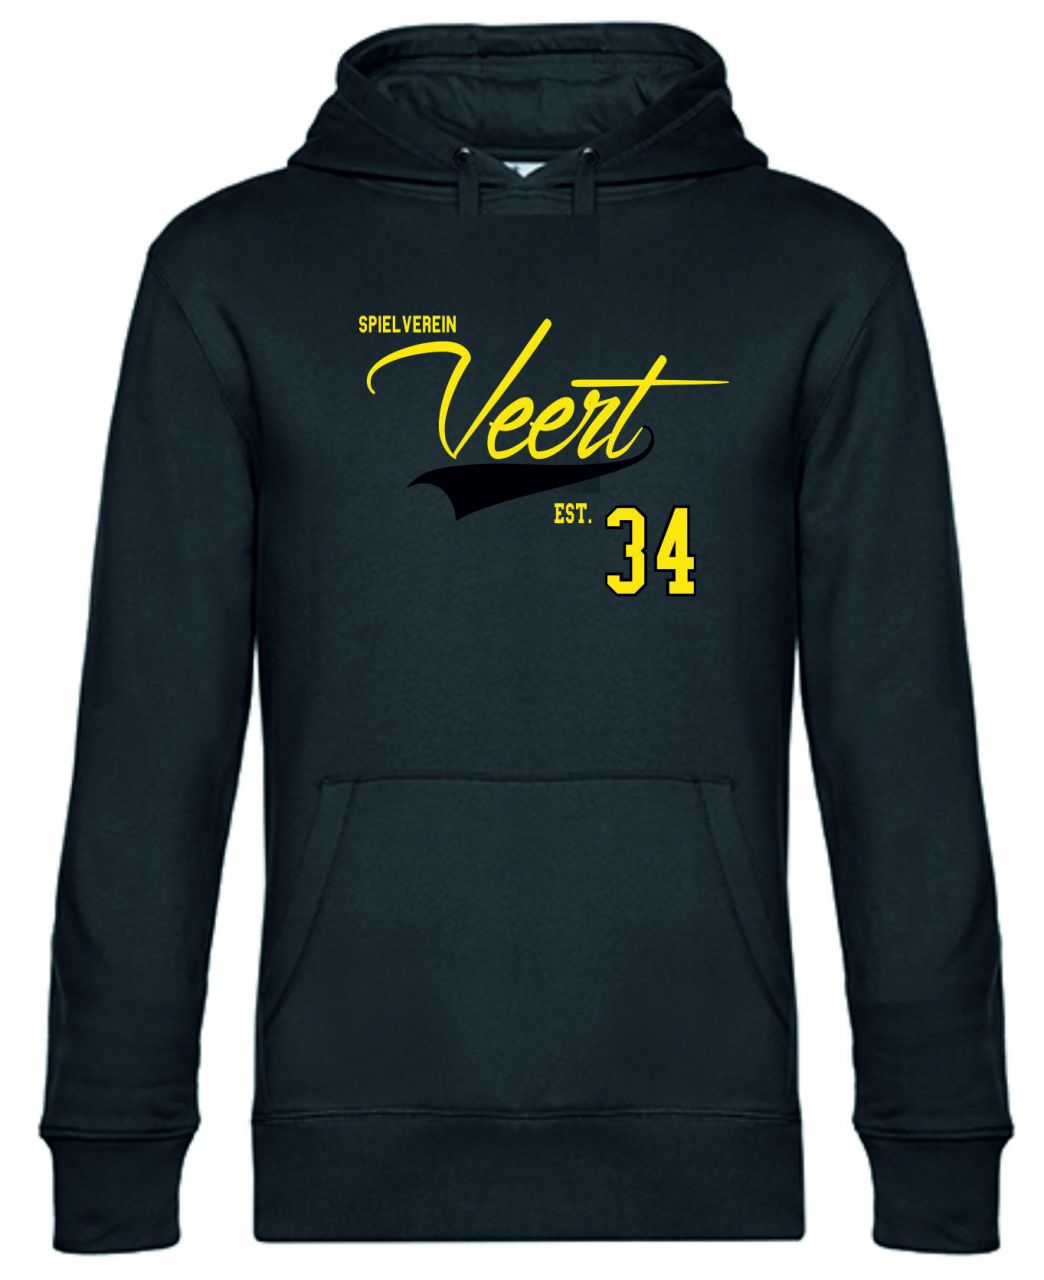 Hoody-Spielverein-Veert-34